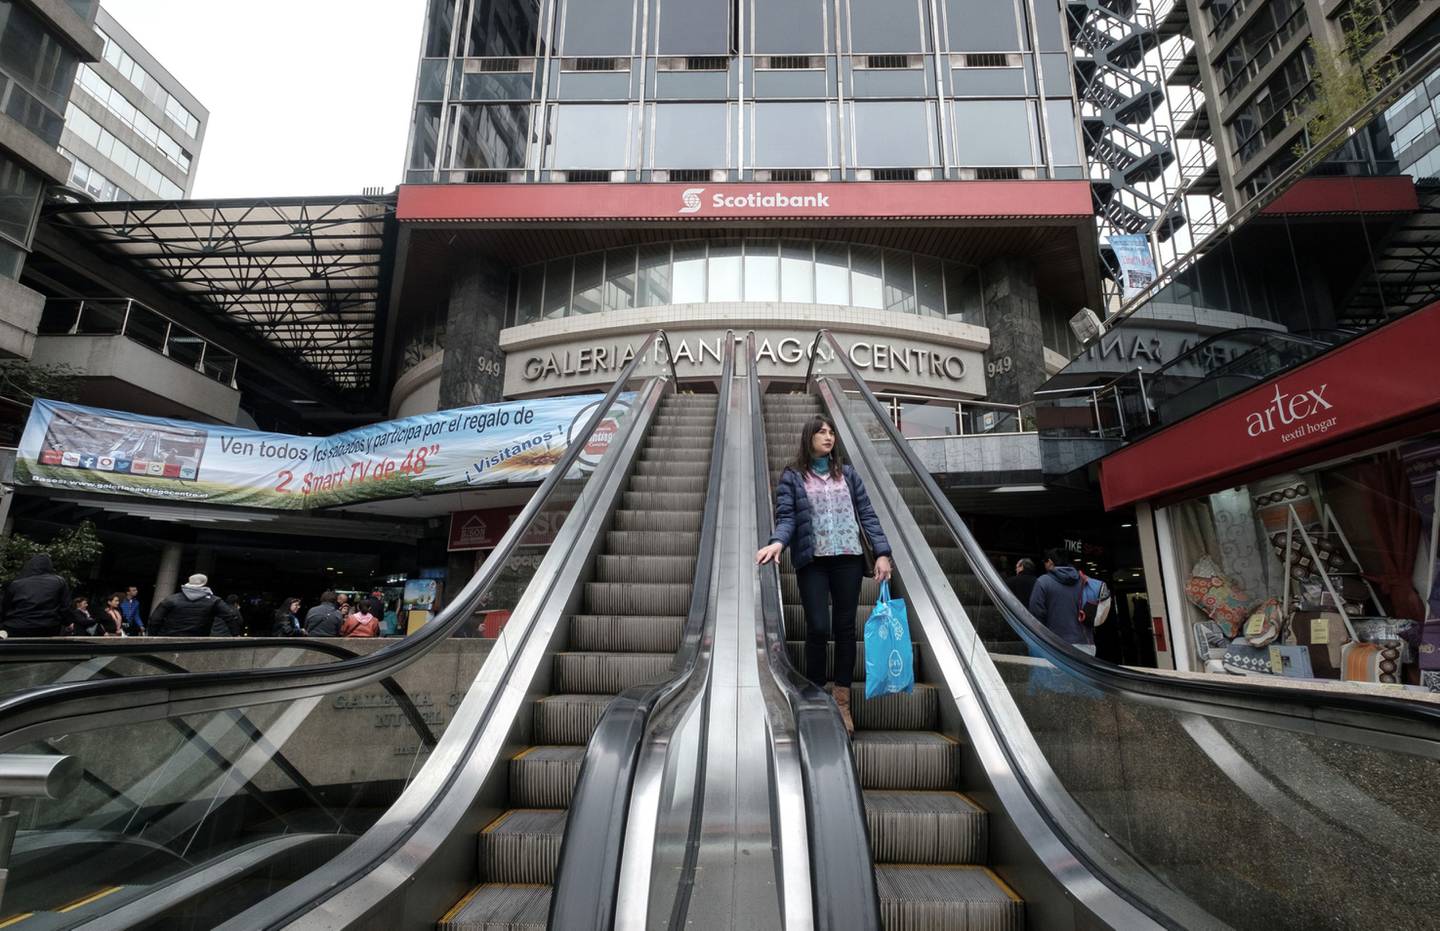 La señalización de Bank of Nova Scotia (Scotiabank) se muestra mientras un comprador sube a una escalera mecánica fuera de la Galería Santiago Chile en Santiago, Chile, el sábado 15 de octubre de 2016.